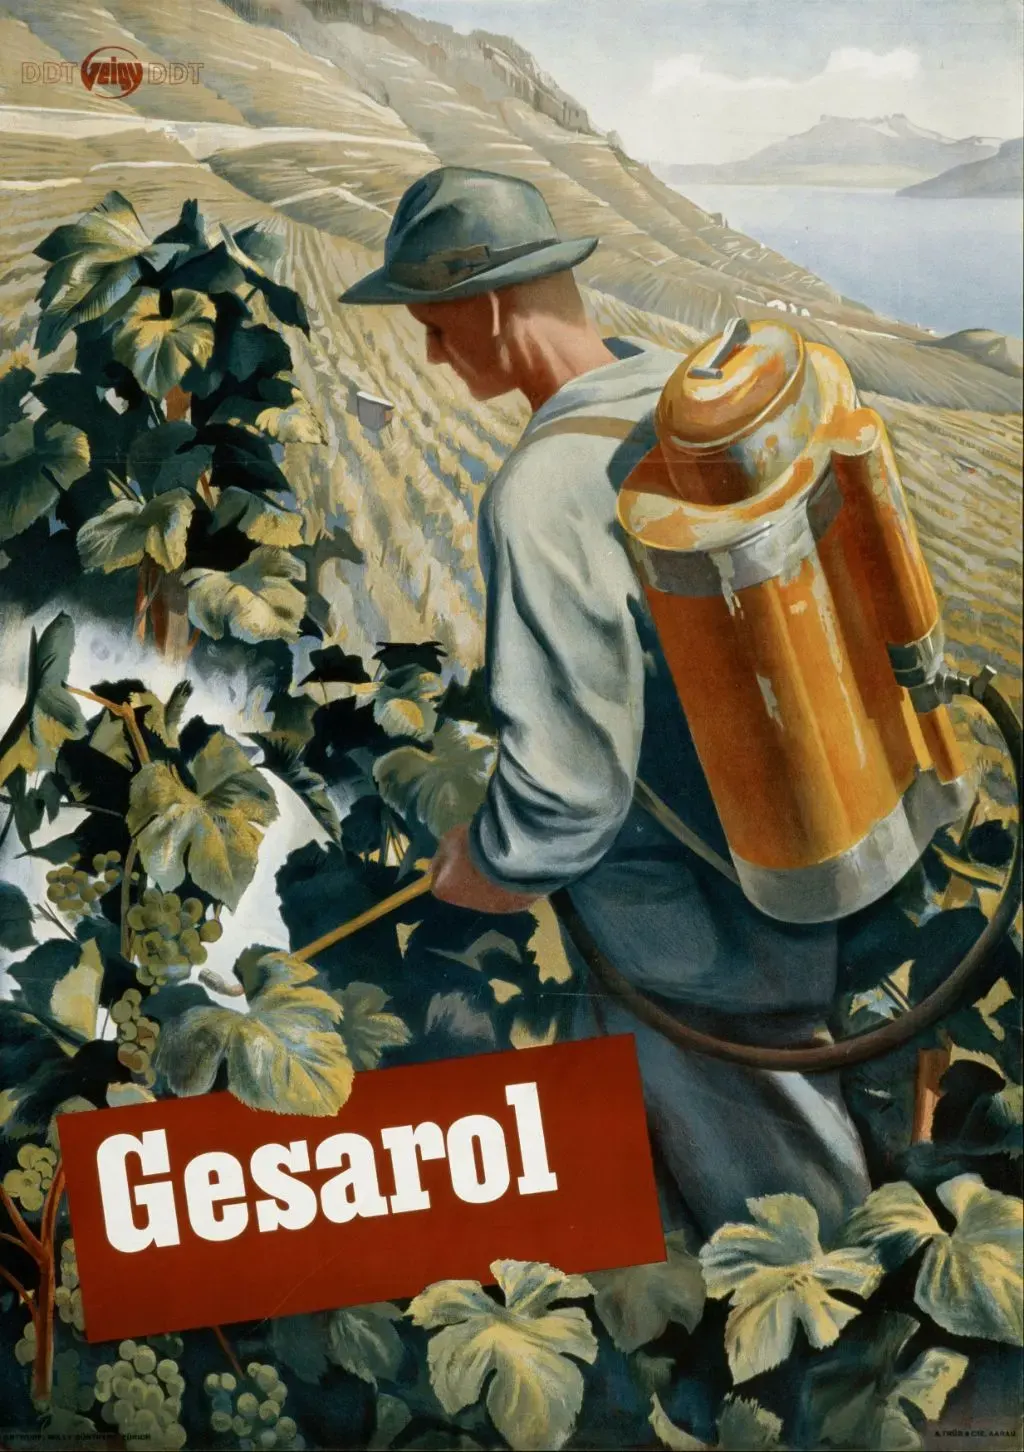 Das Plakat von 150 zeigt eine Illustration des Einsatzes von Gesarol